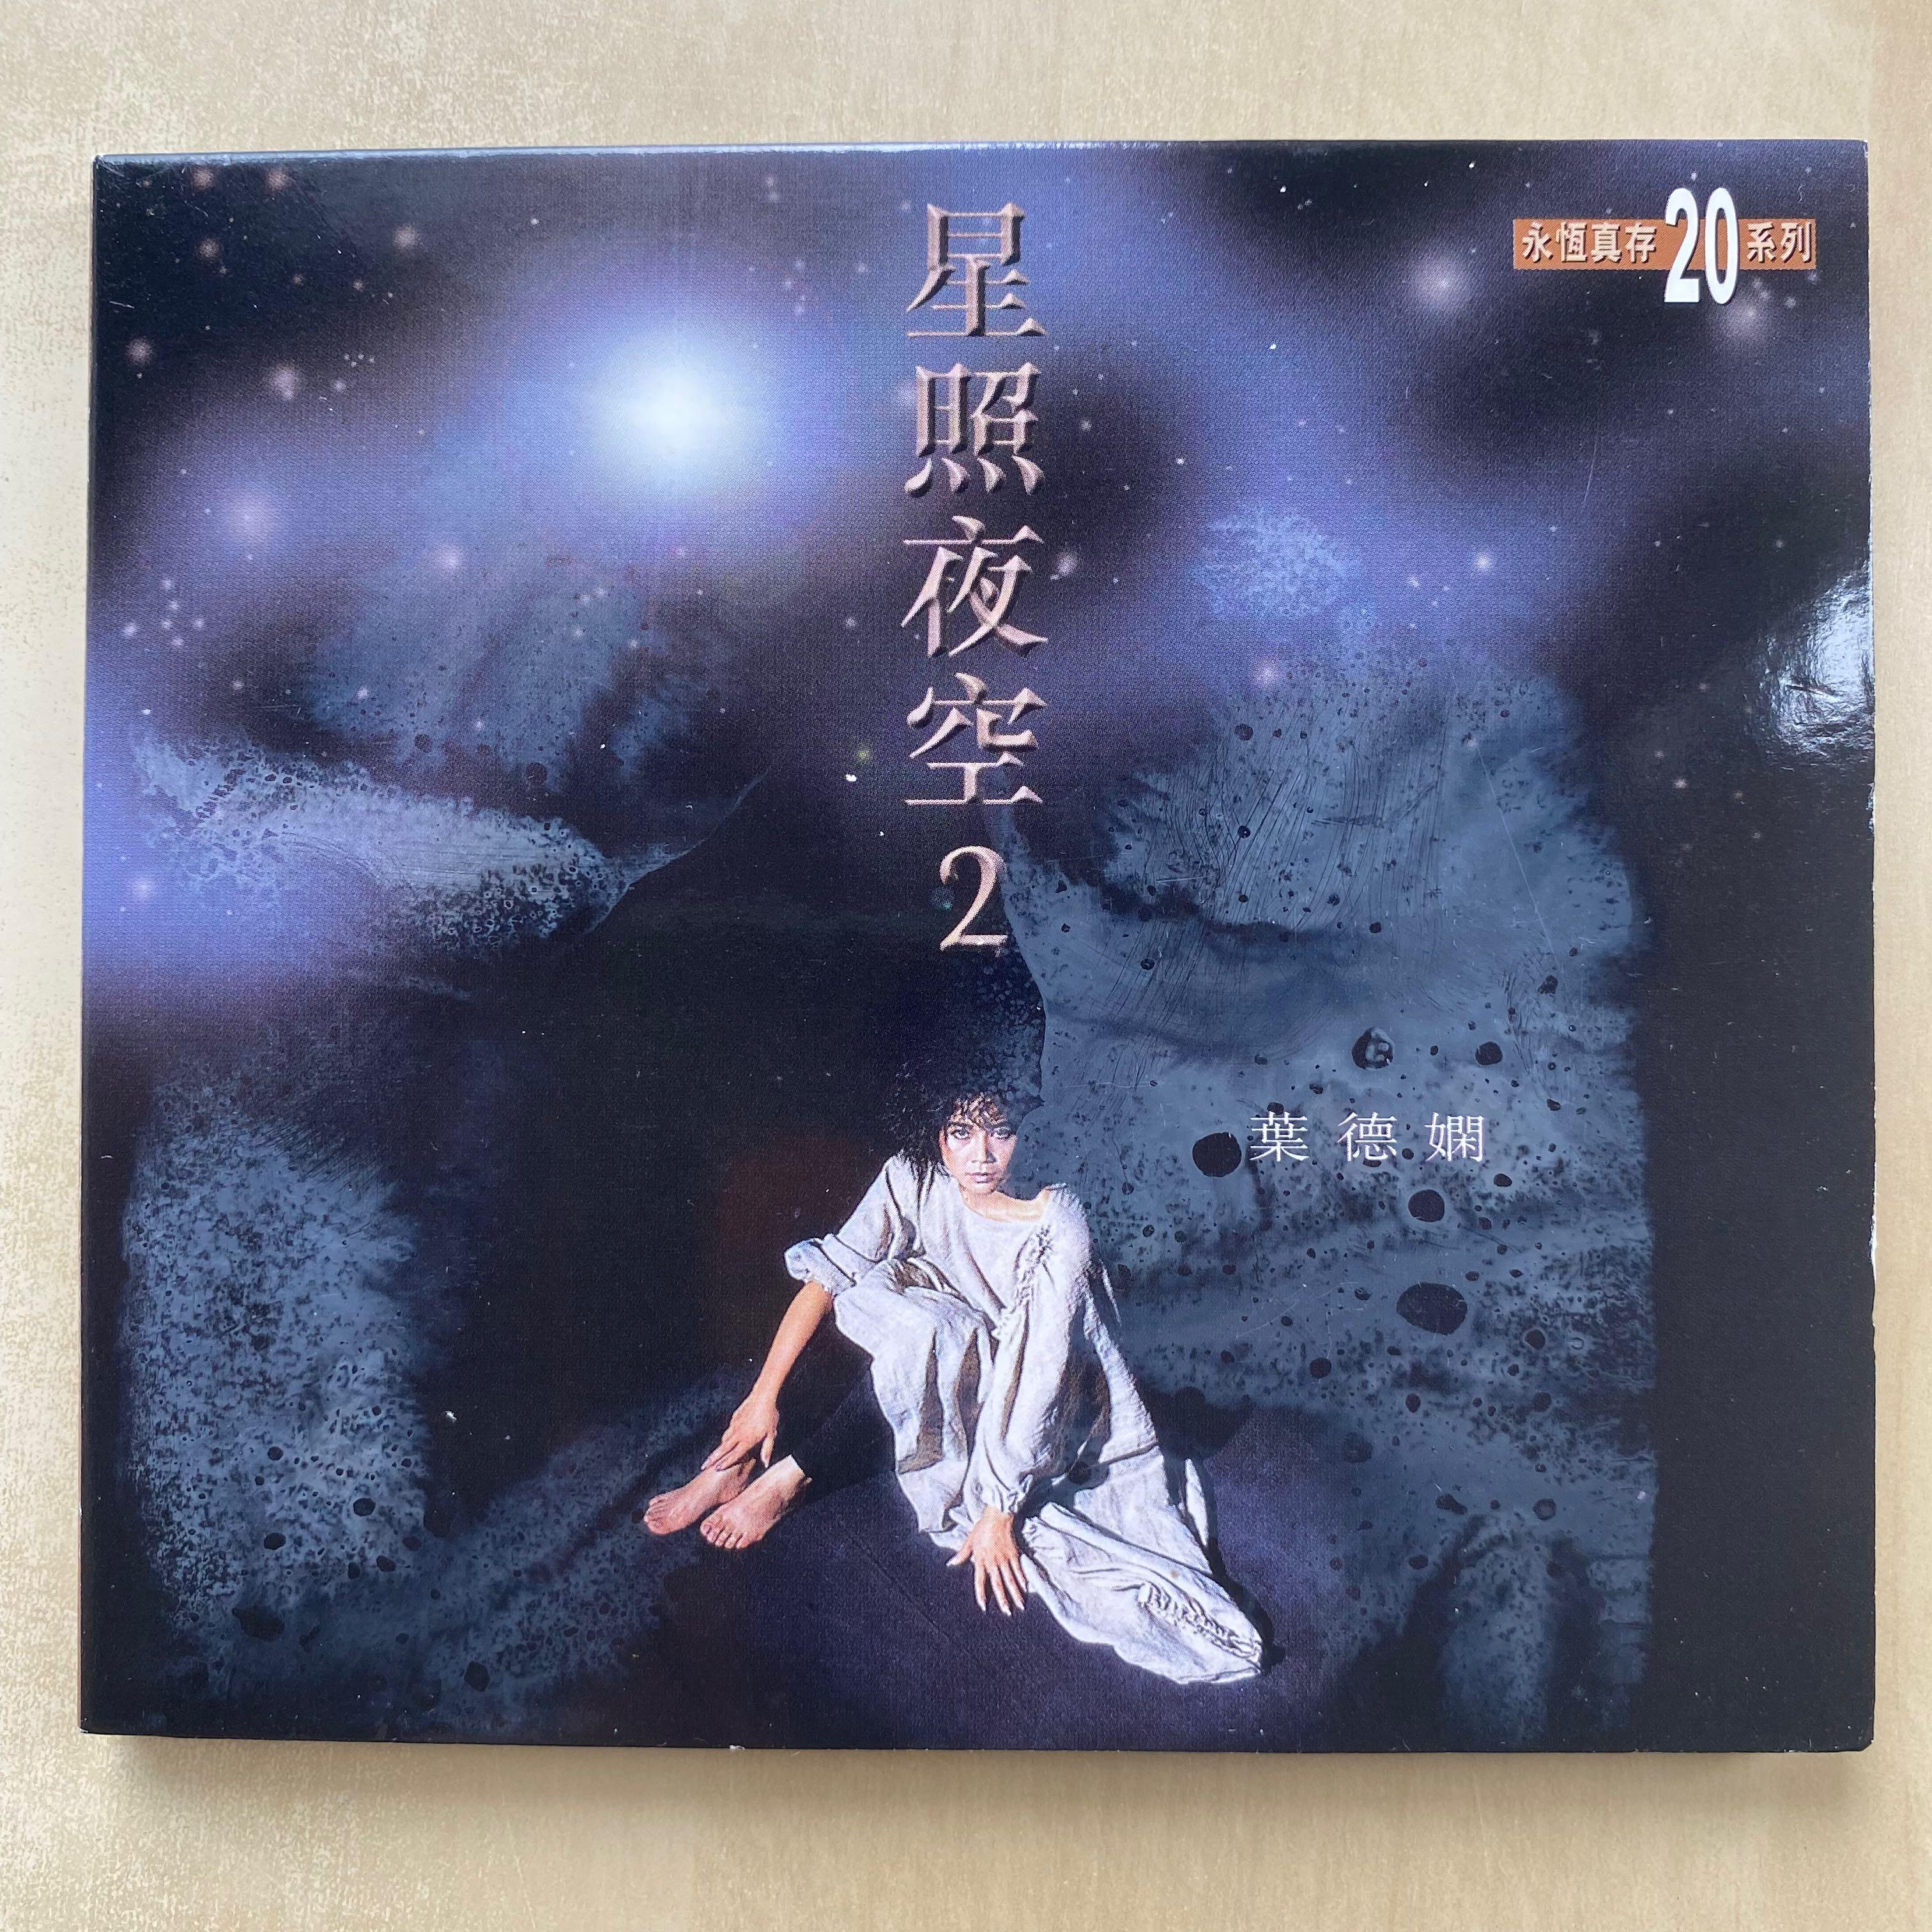 CD丨葉德嫻星照夜空2 精選Deanie Yip 永恆真存20系列, 興趣及遊戲 